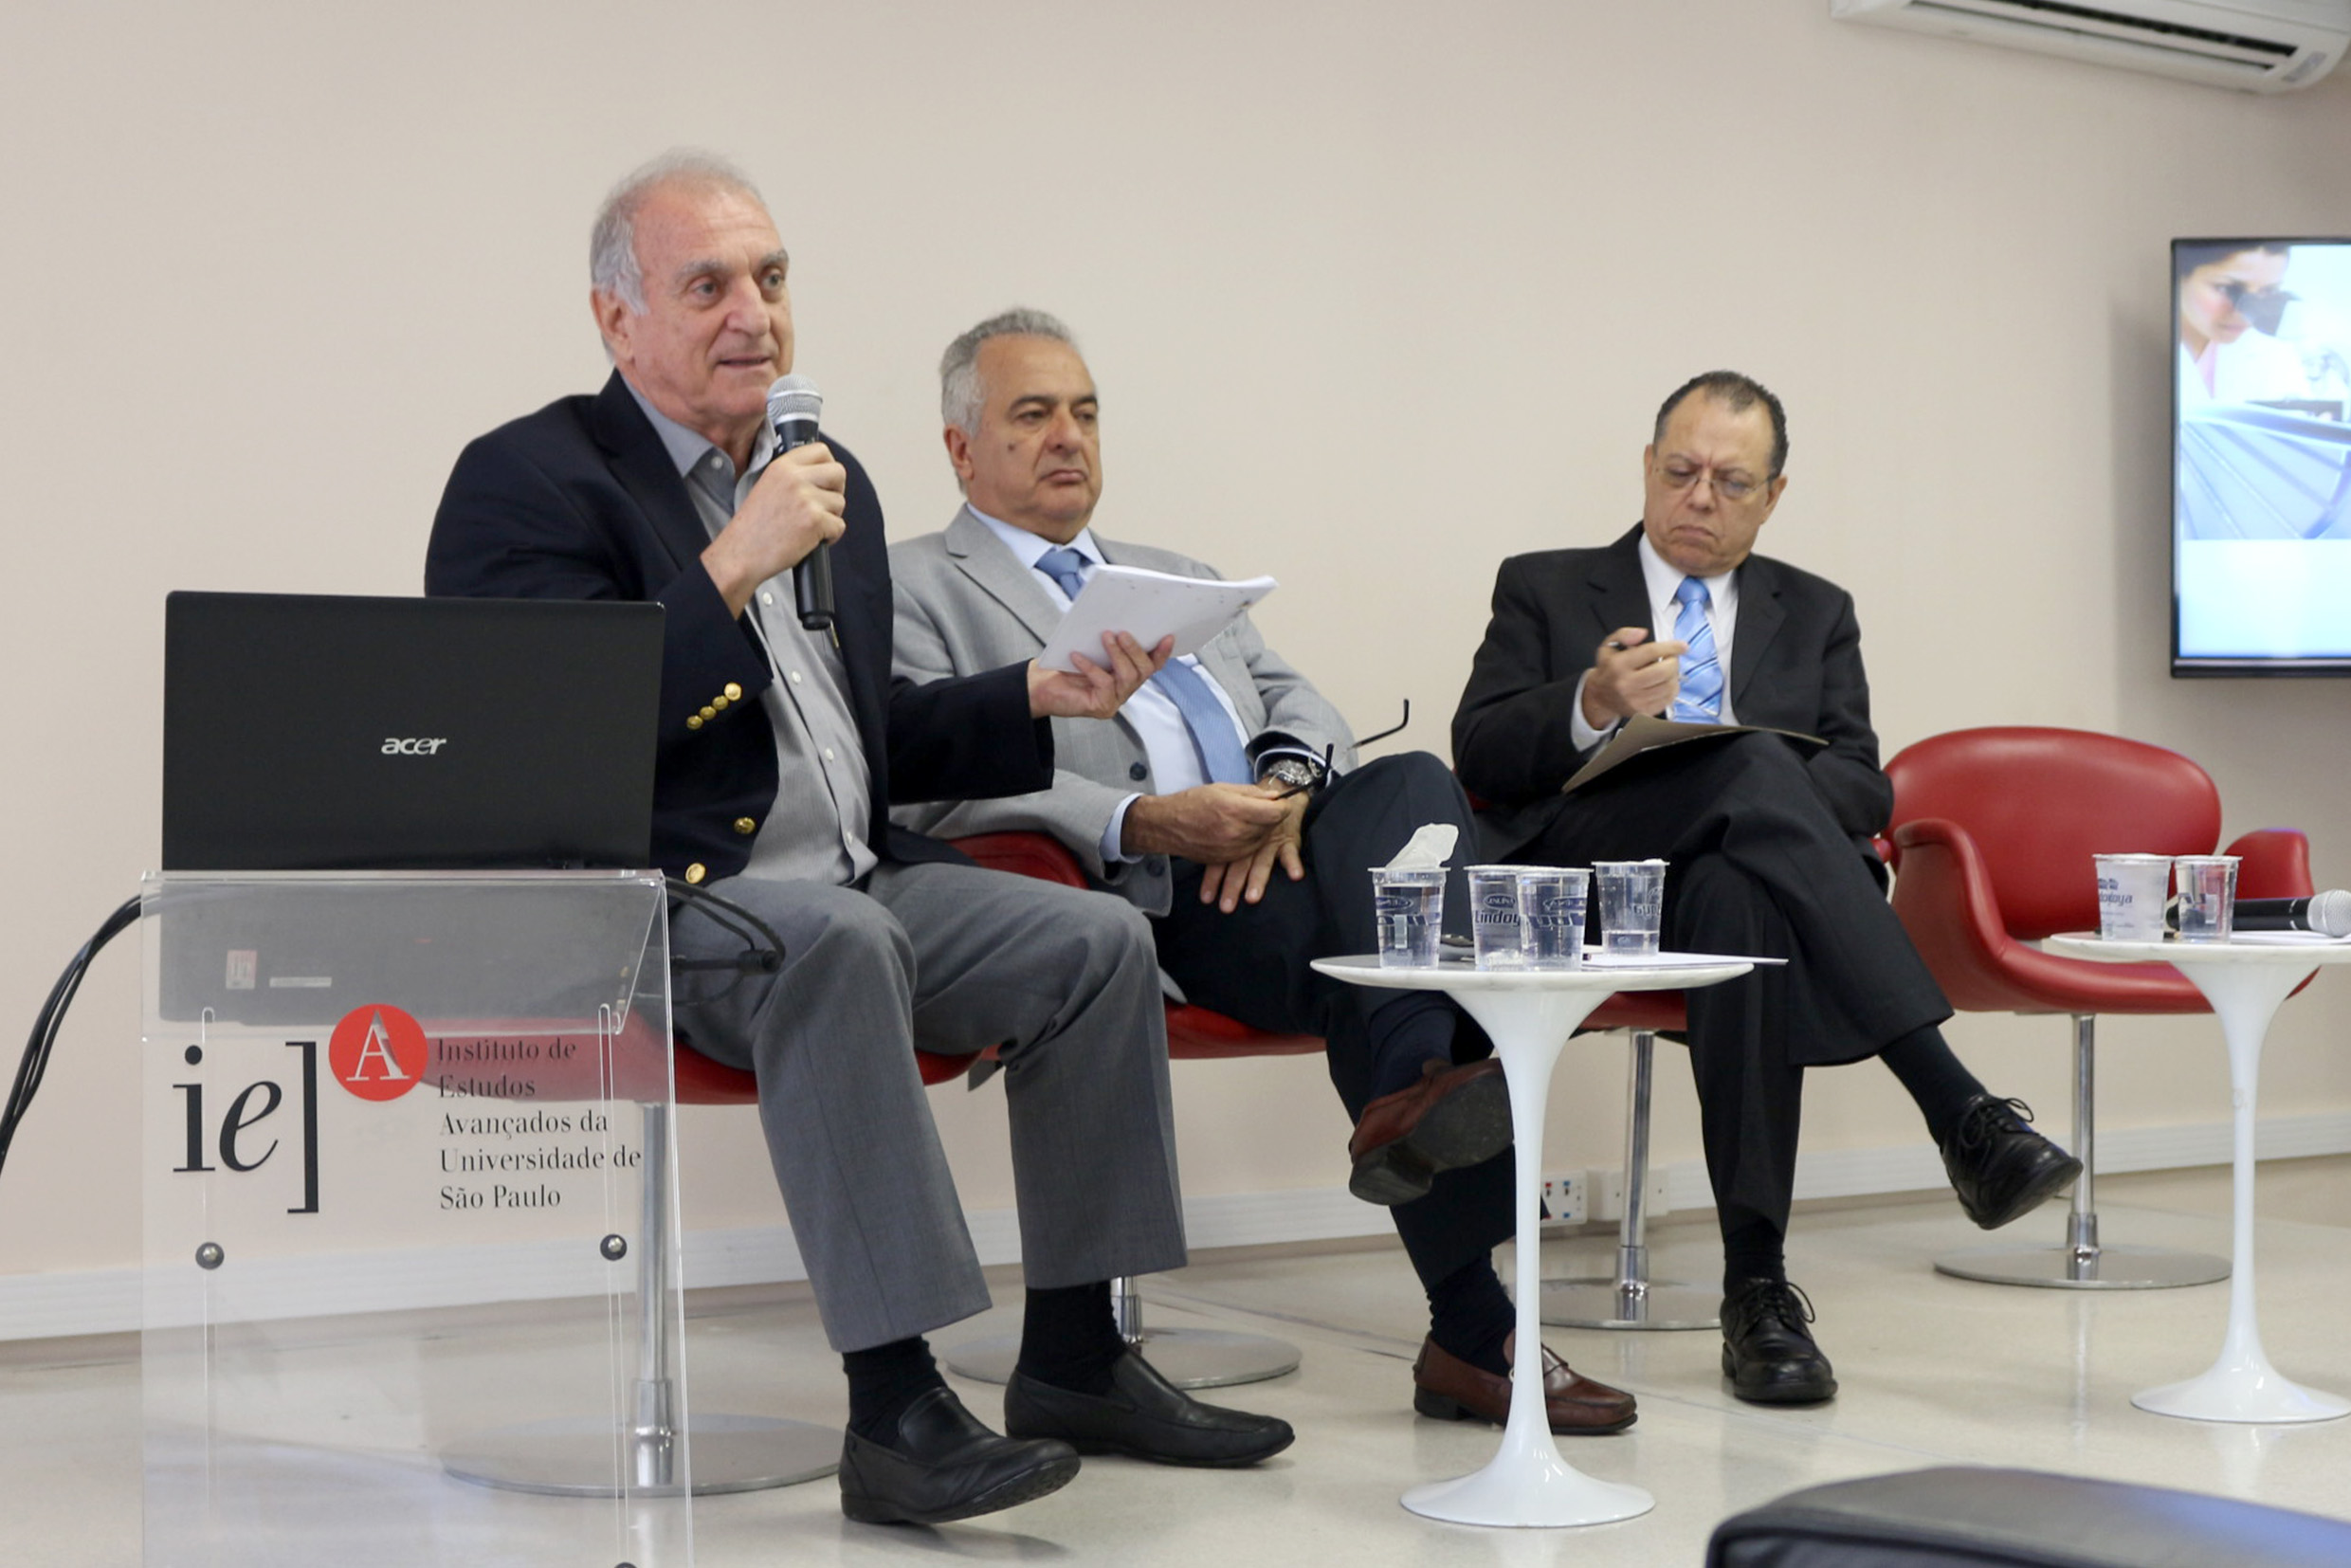 José Fernando Perez, Jorge Kalil e Glaucius de Oliva